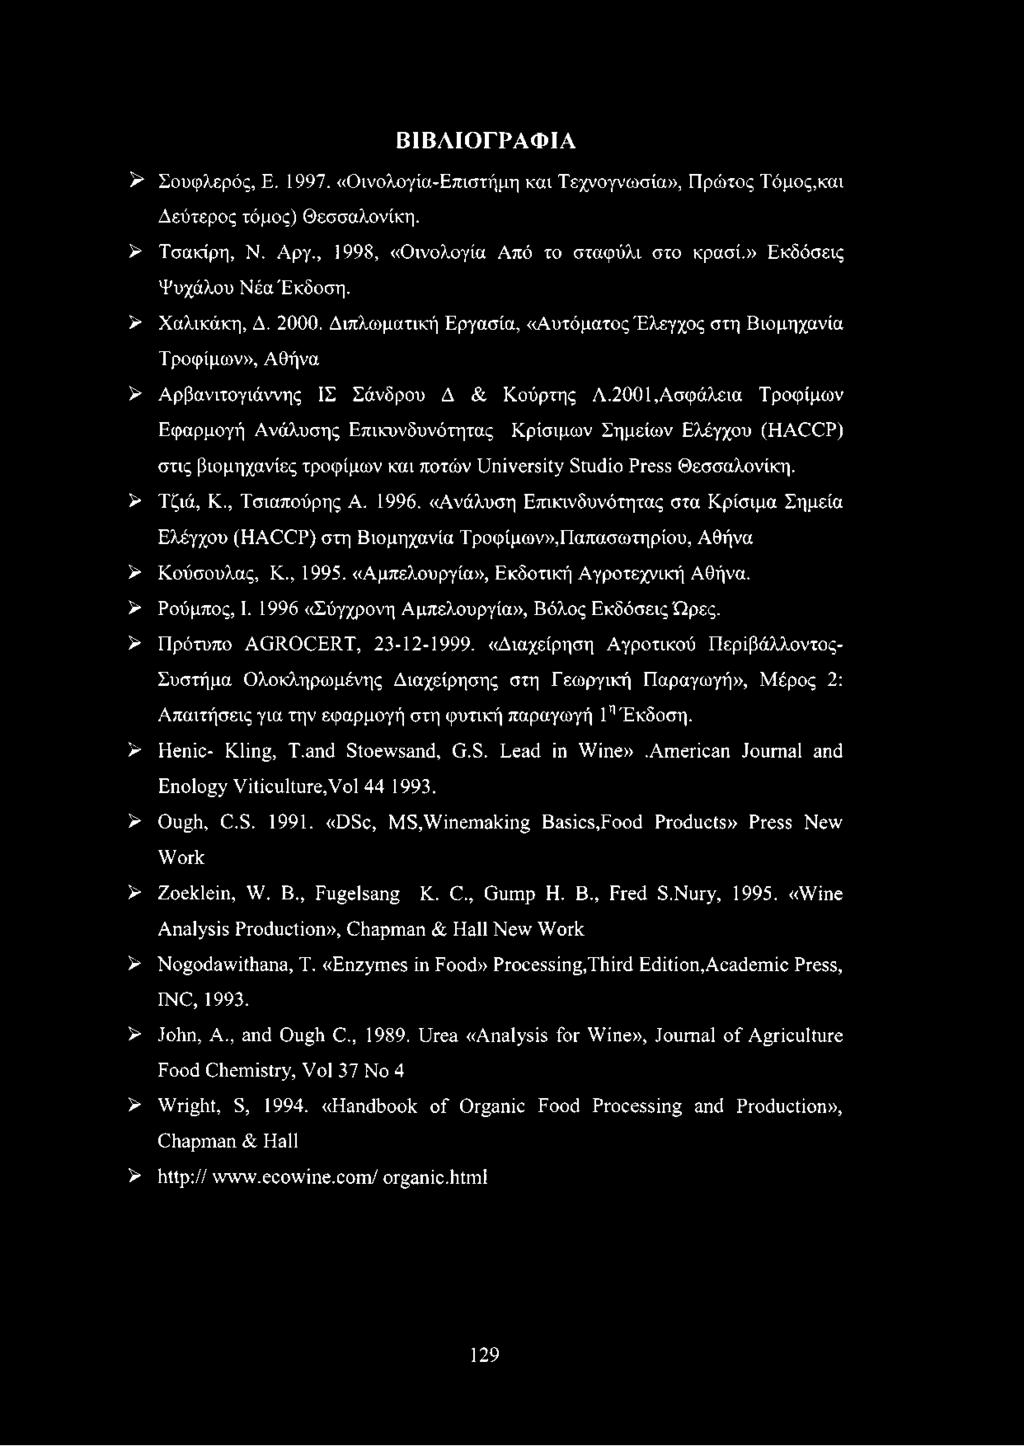 2001,Ασφάλεια Τροφίμων Εφαρμογή Ανάλυσης Επικυνδυνότητας Κρίσιμων Σημείων Ελέγχου (HACCP) στις βιομηχανίες τροφίμων και ποτών University Studio Press Θεσσαλονίκη. > Τζιά, Κ., Τσιαπούρης Α. 1996.